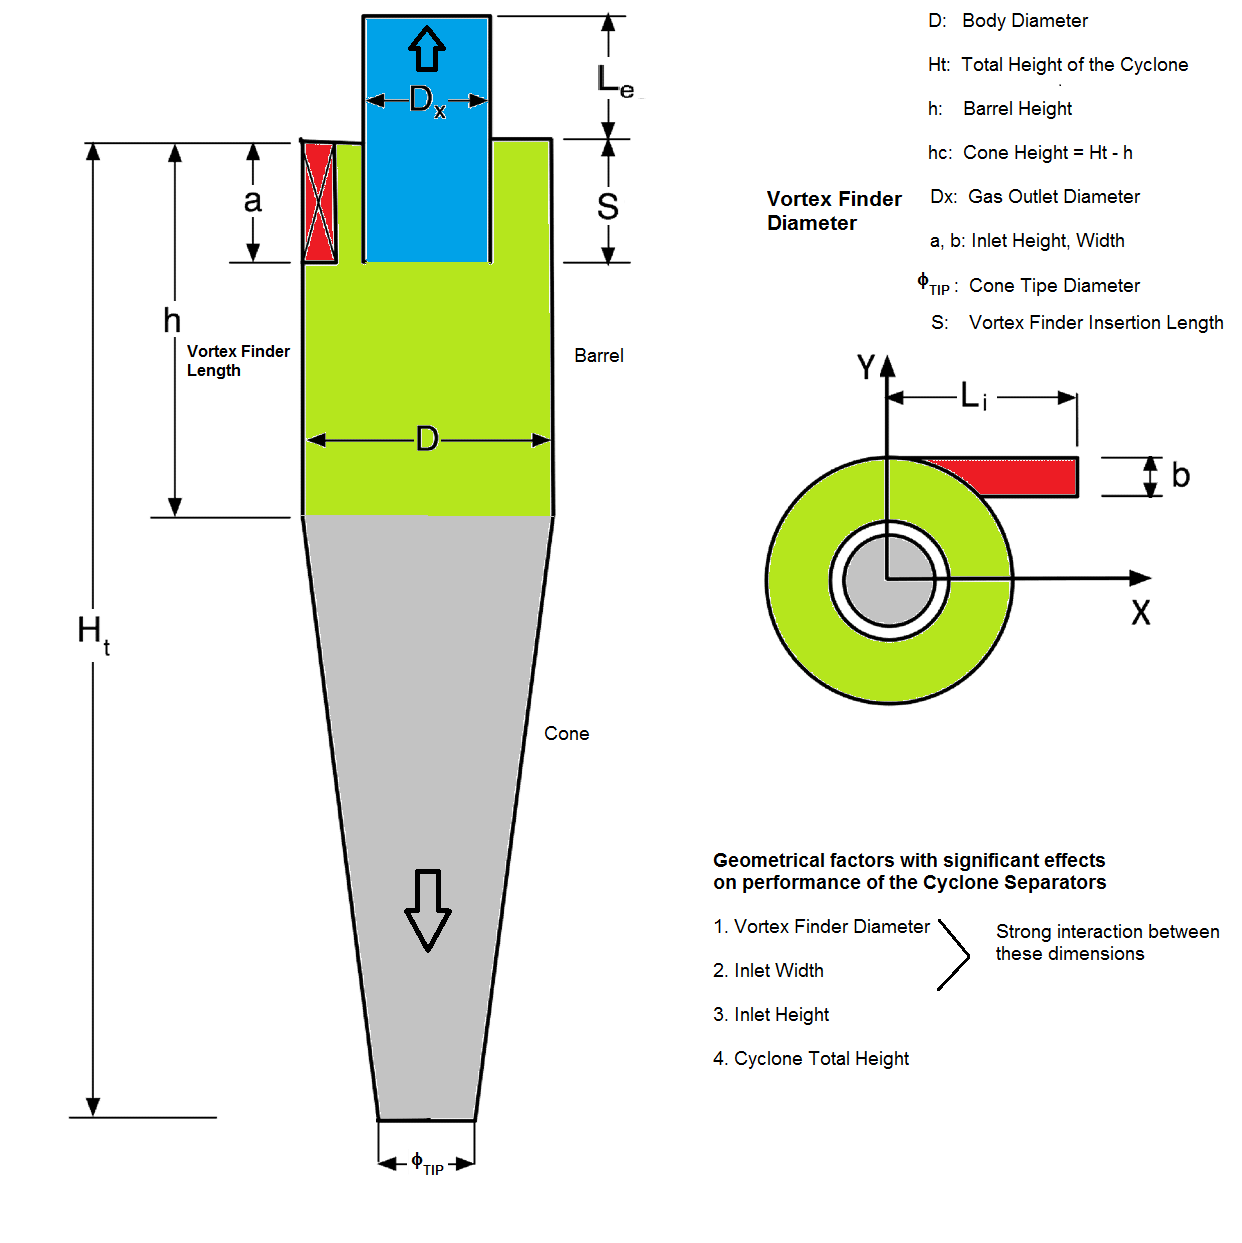 Design of Cyclone Separators